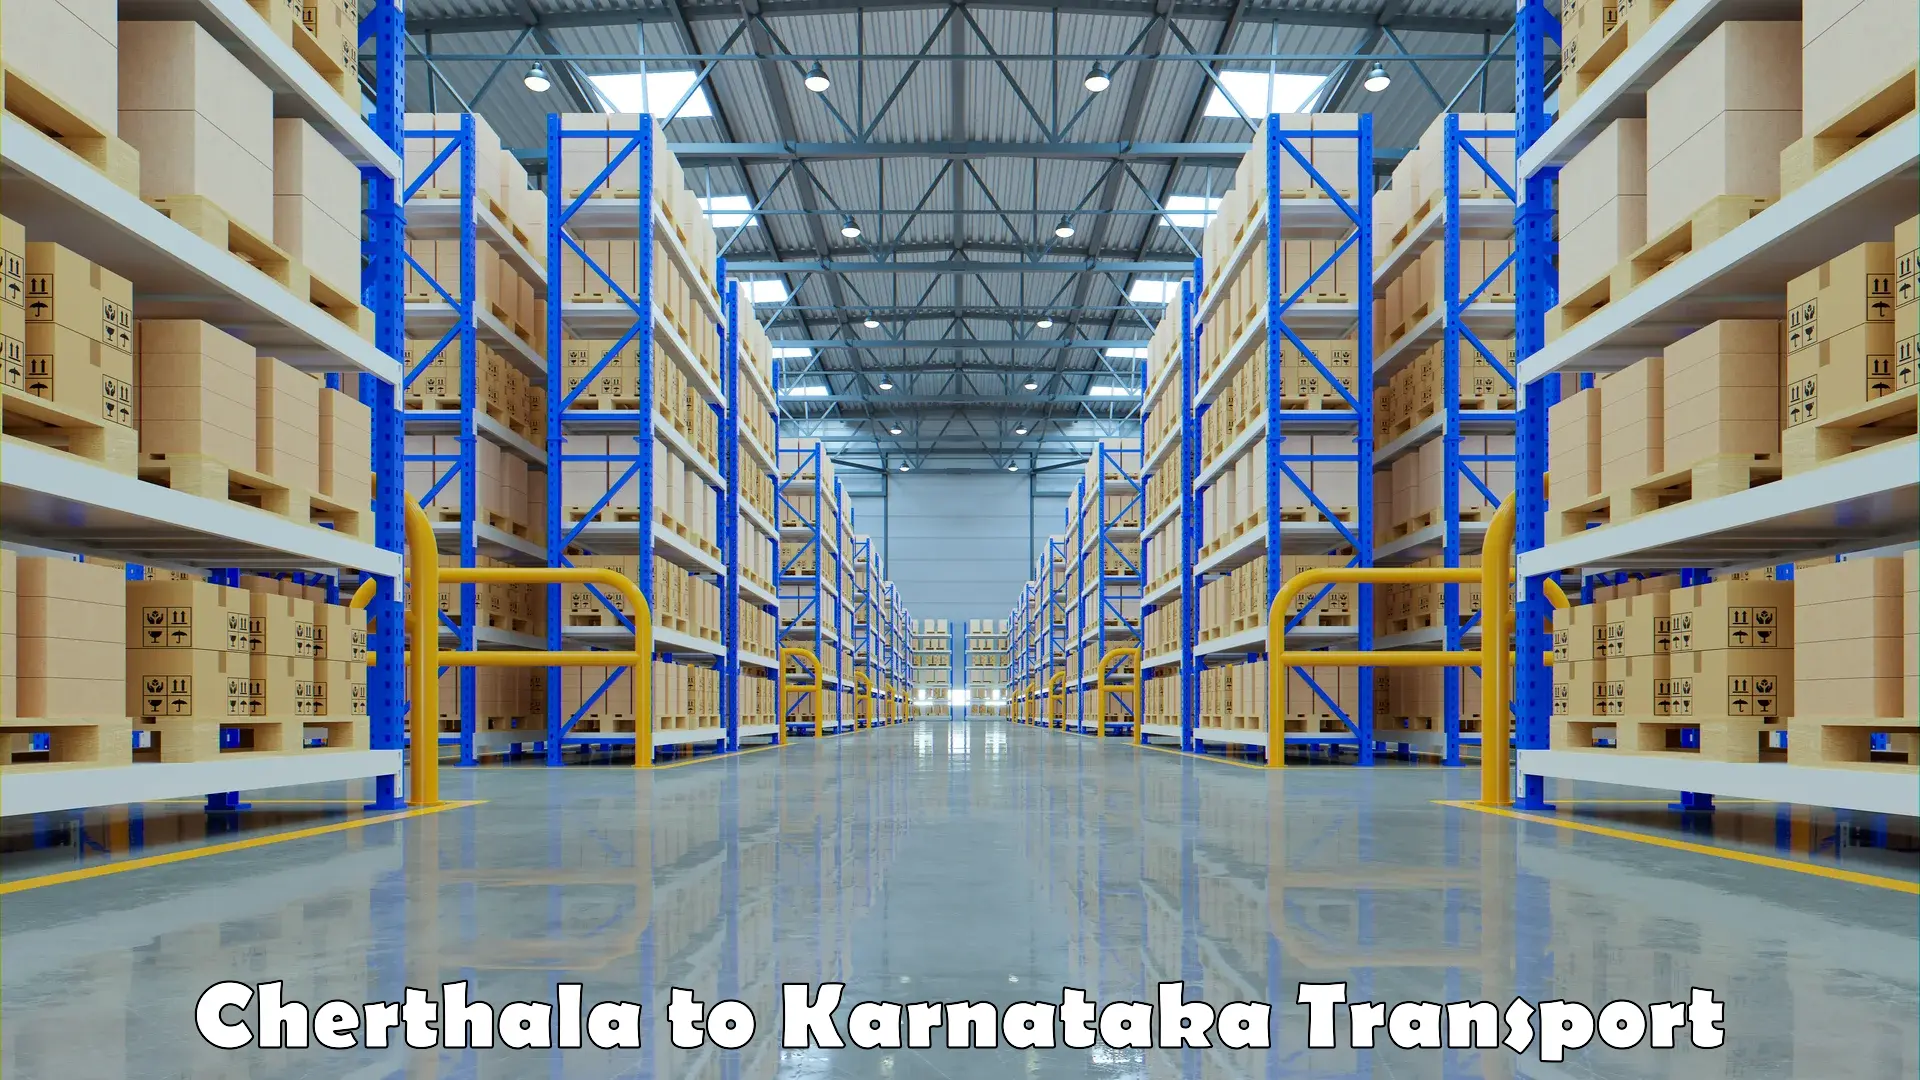 Commercial transport service Cherthala to Karnataka